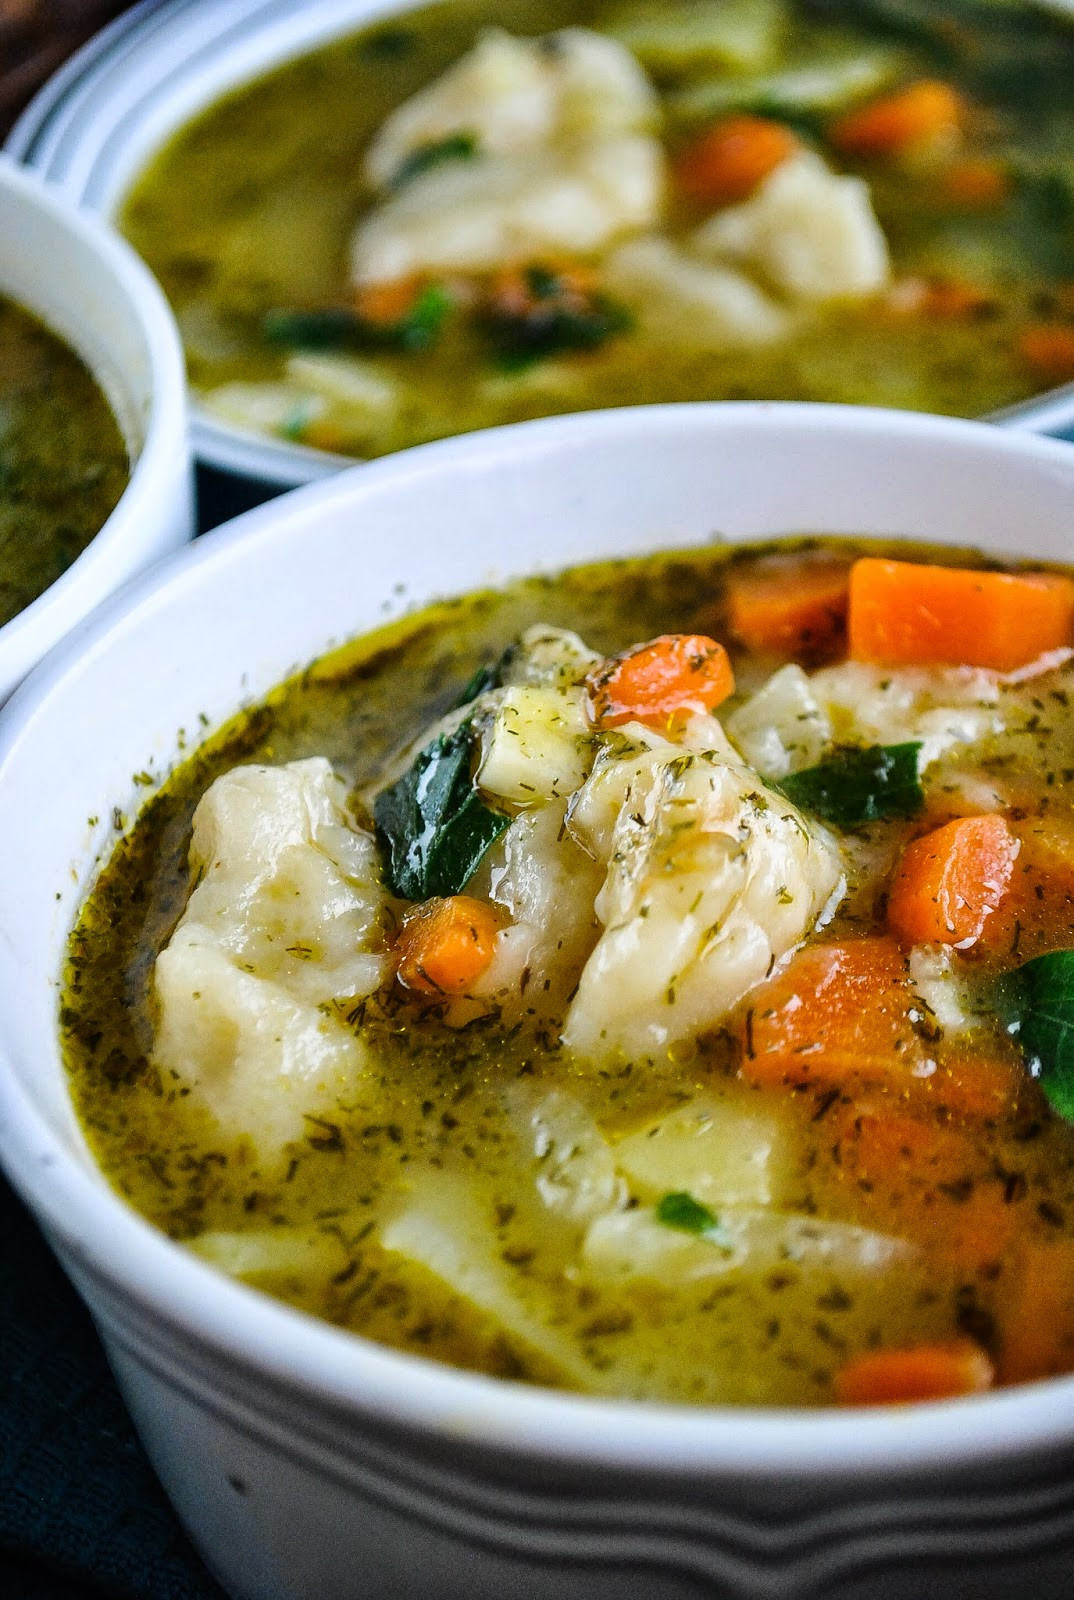 Vegetarian Soup Recipes Easy
 Easy ve able and dumpling soup video VeganSandra